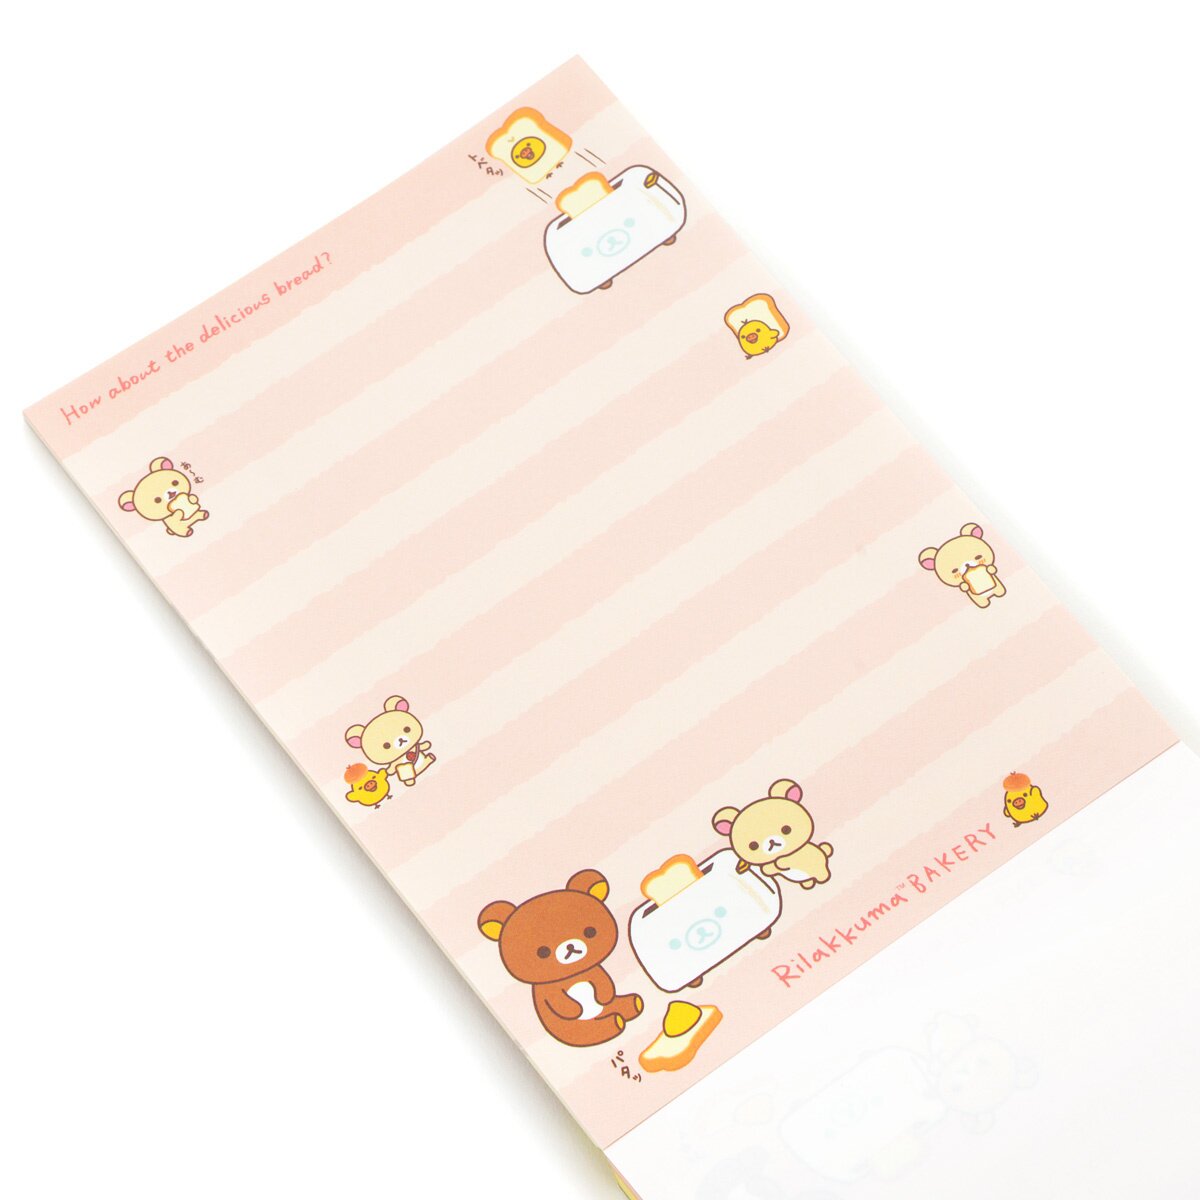 Cute Kawaii San-X Rilakkuma Bear Fruits Sticker Sheet 2020 - A